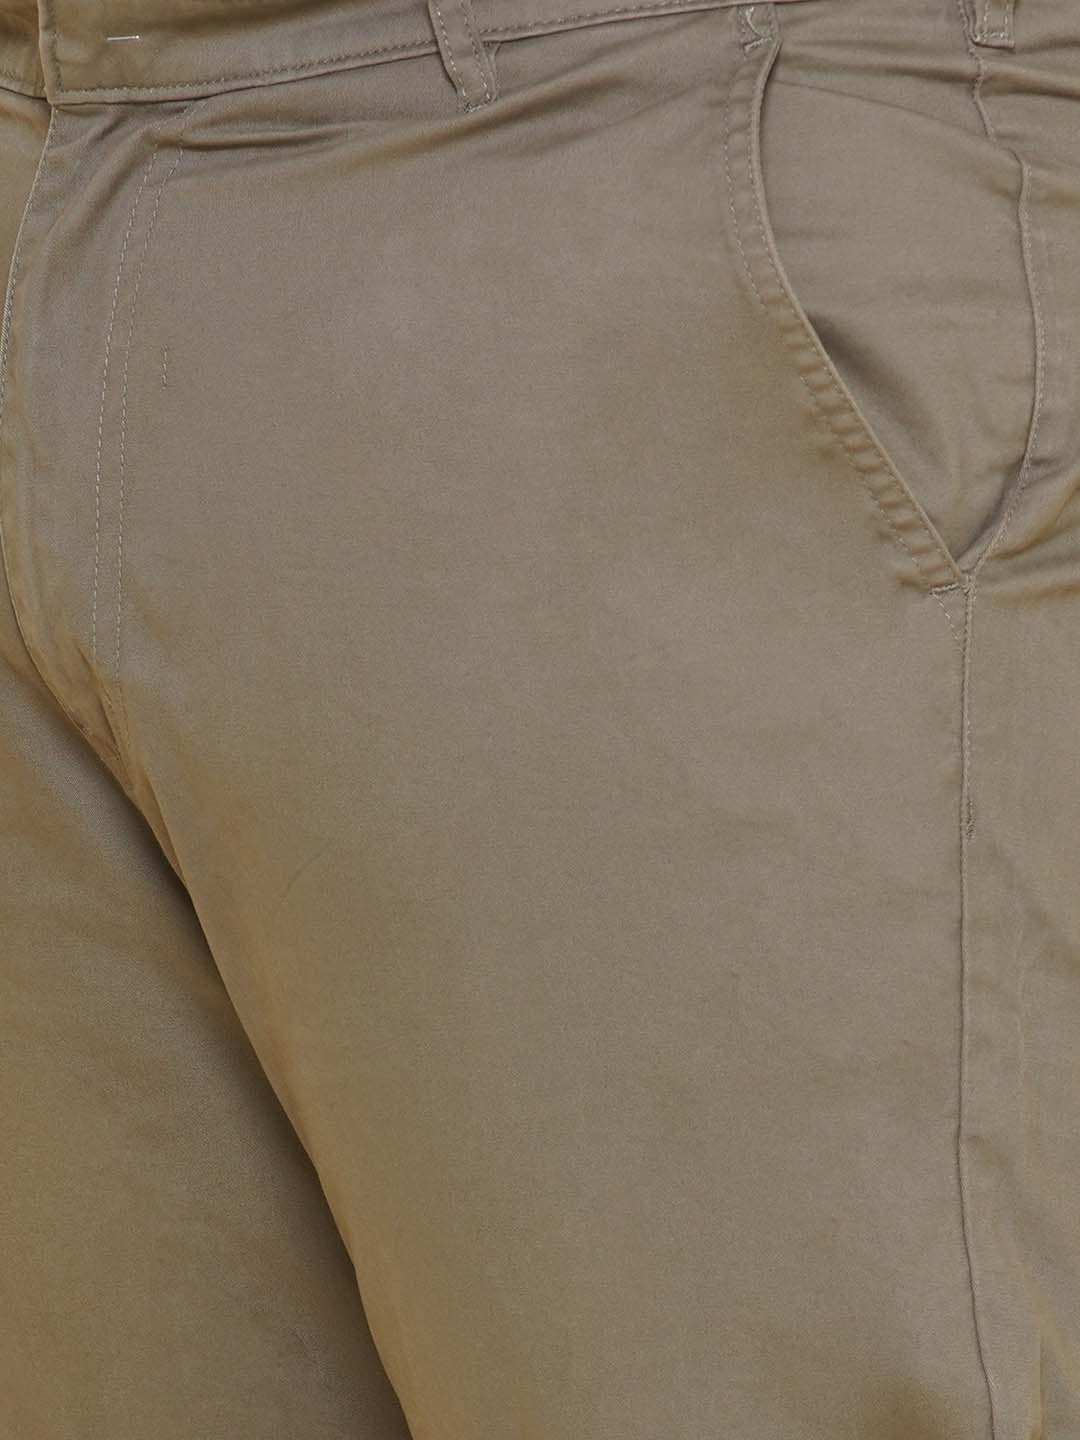 bottomwear/trousers/JPTR21021/jptr21021-2.jpg